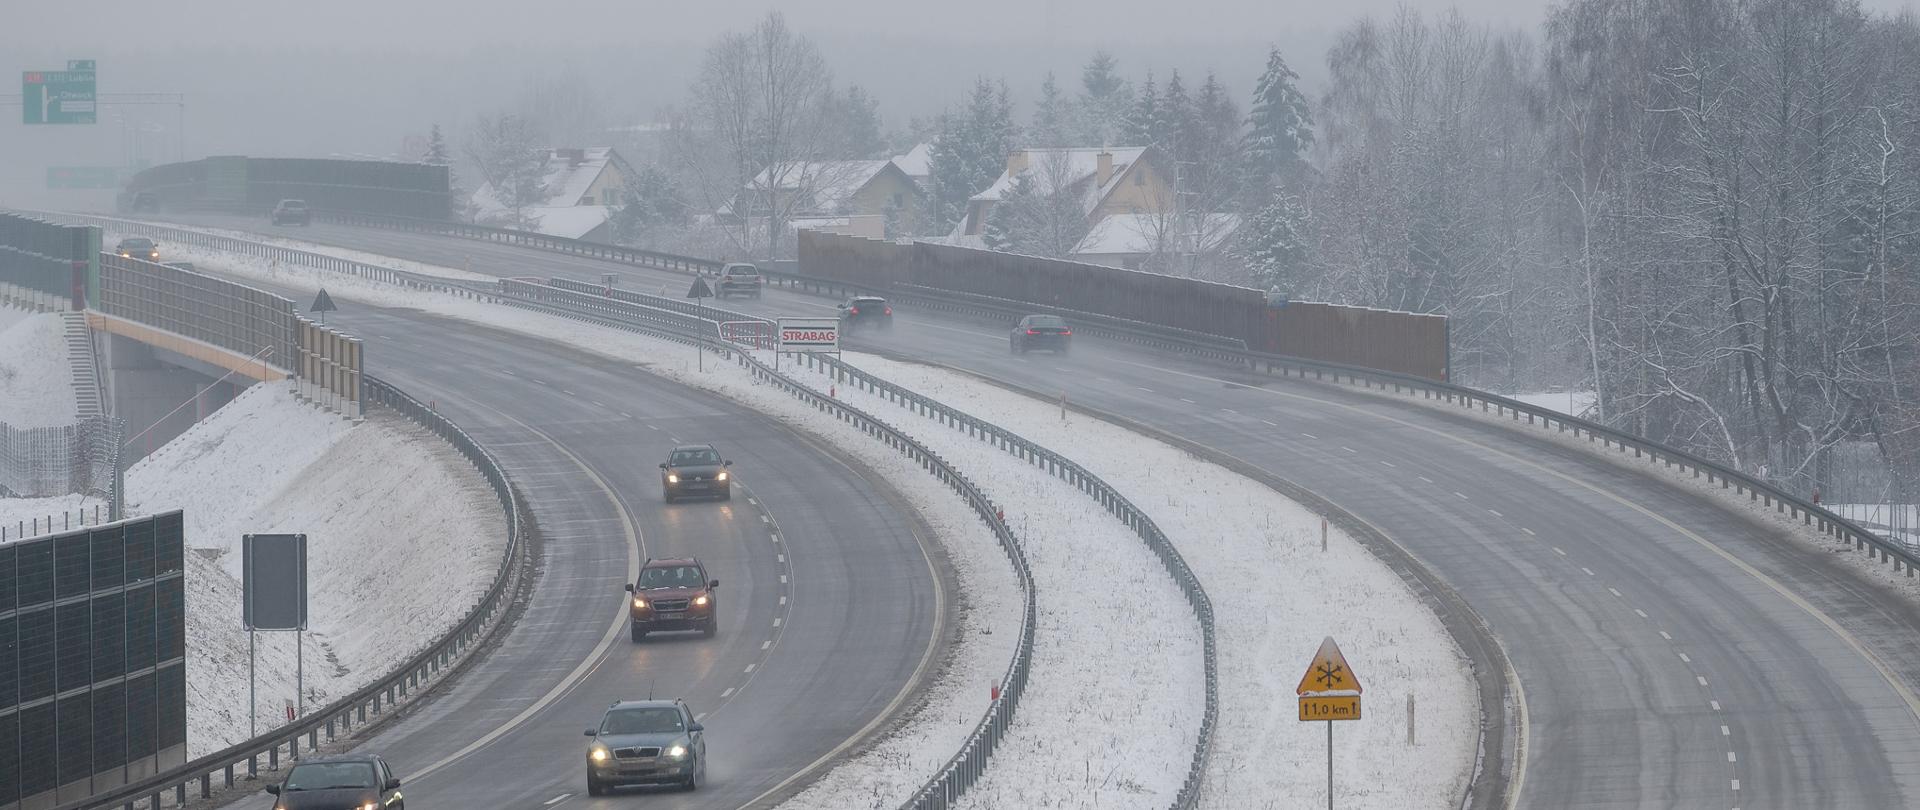 Na zdjęciu widoczne samochody poruszające się drogą ekspresowa S17. Zdjęcie wykonane zimą - odśnieżona droga i niewielka warstwa śniegu pokrywająca pasy zieleni oddzielające jezdnie.